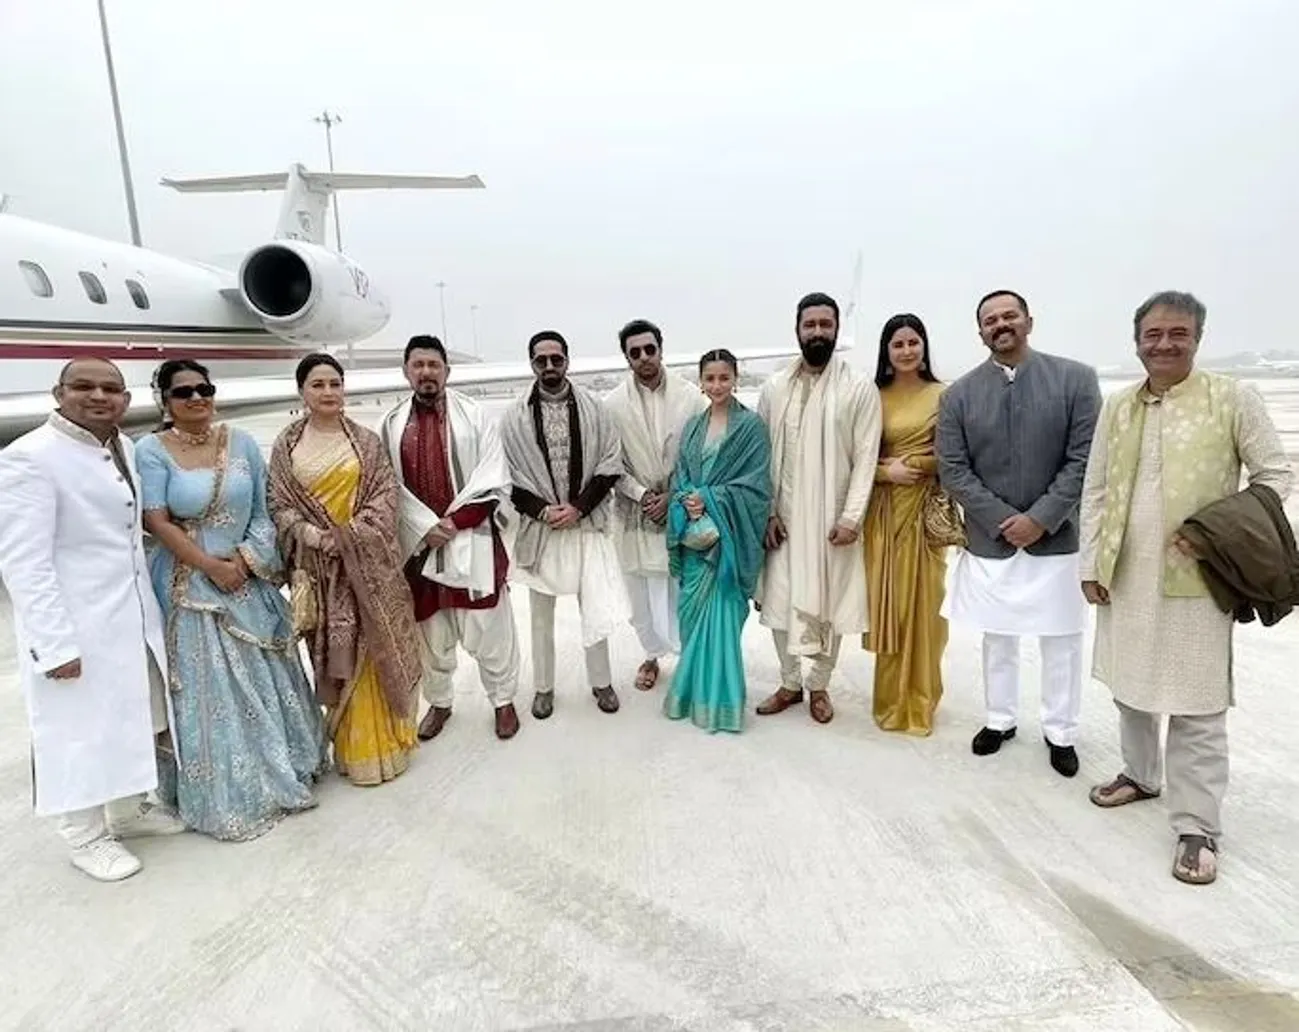 Katrina Kaif, Vicky Kaushal, Ranbir Kapoor, Alia Bhatt, Saina Nehwal, P. Kashyap, Rohit Shetty and Ayushmann Khurrana are seen in a selfie taken by Madhur Bhandarkar